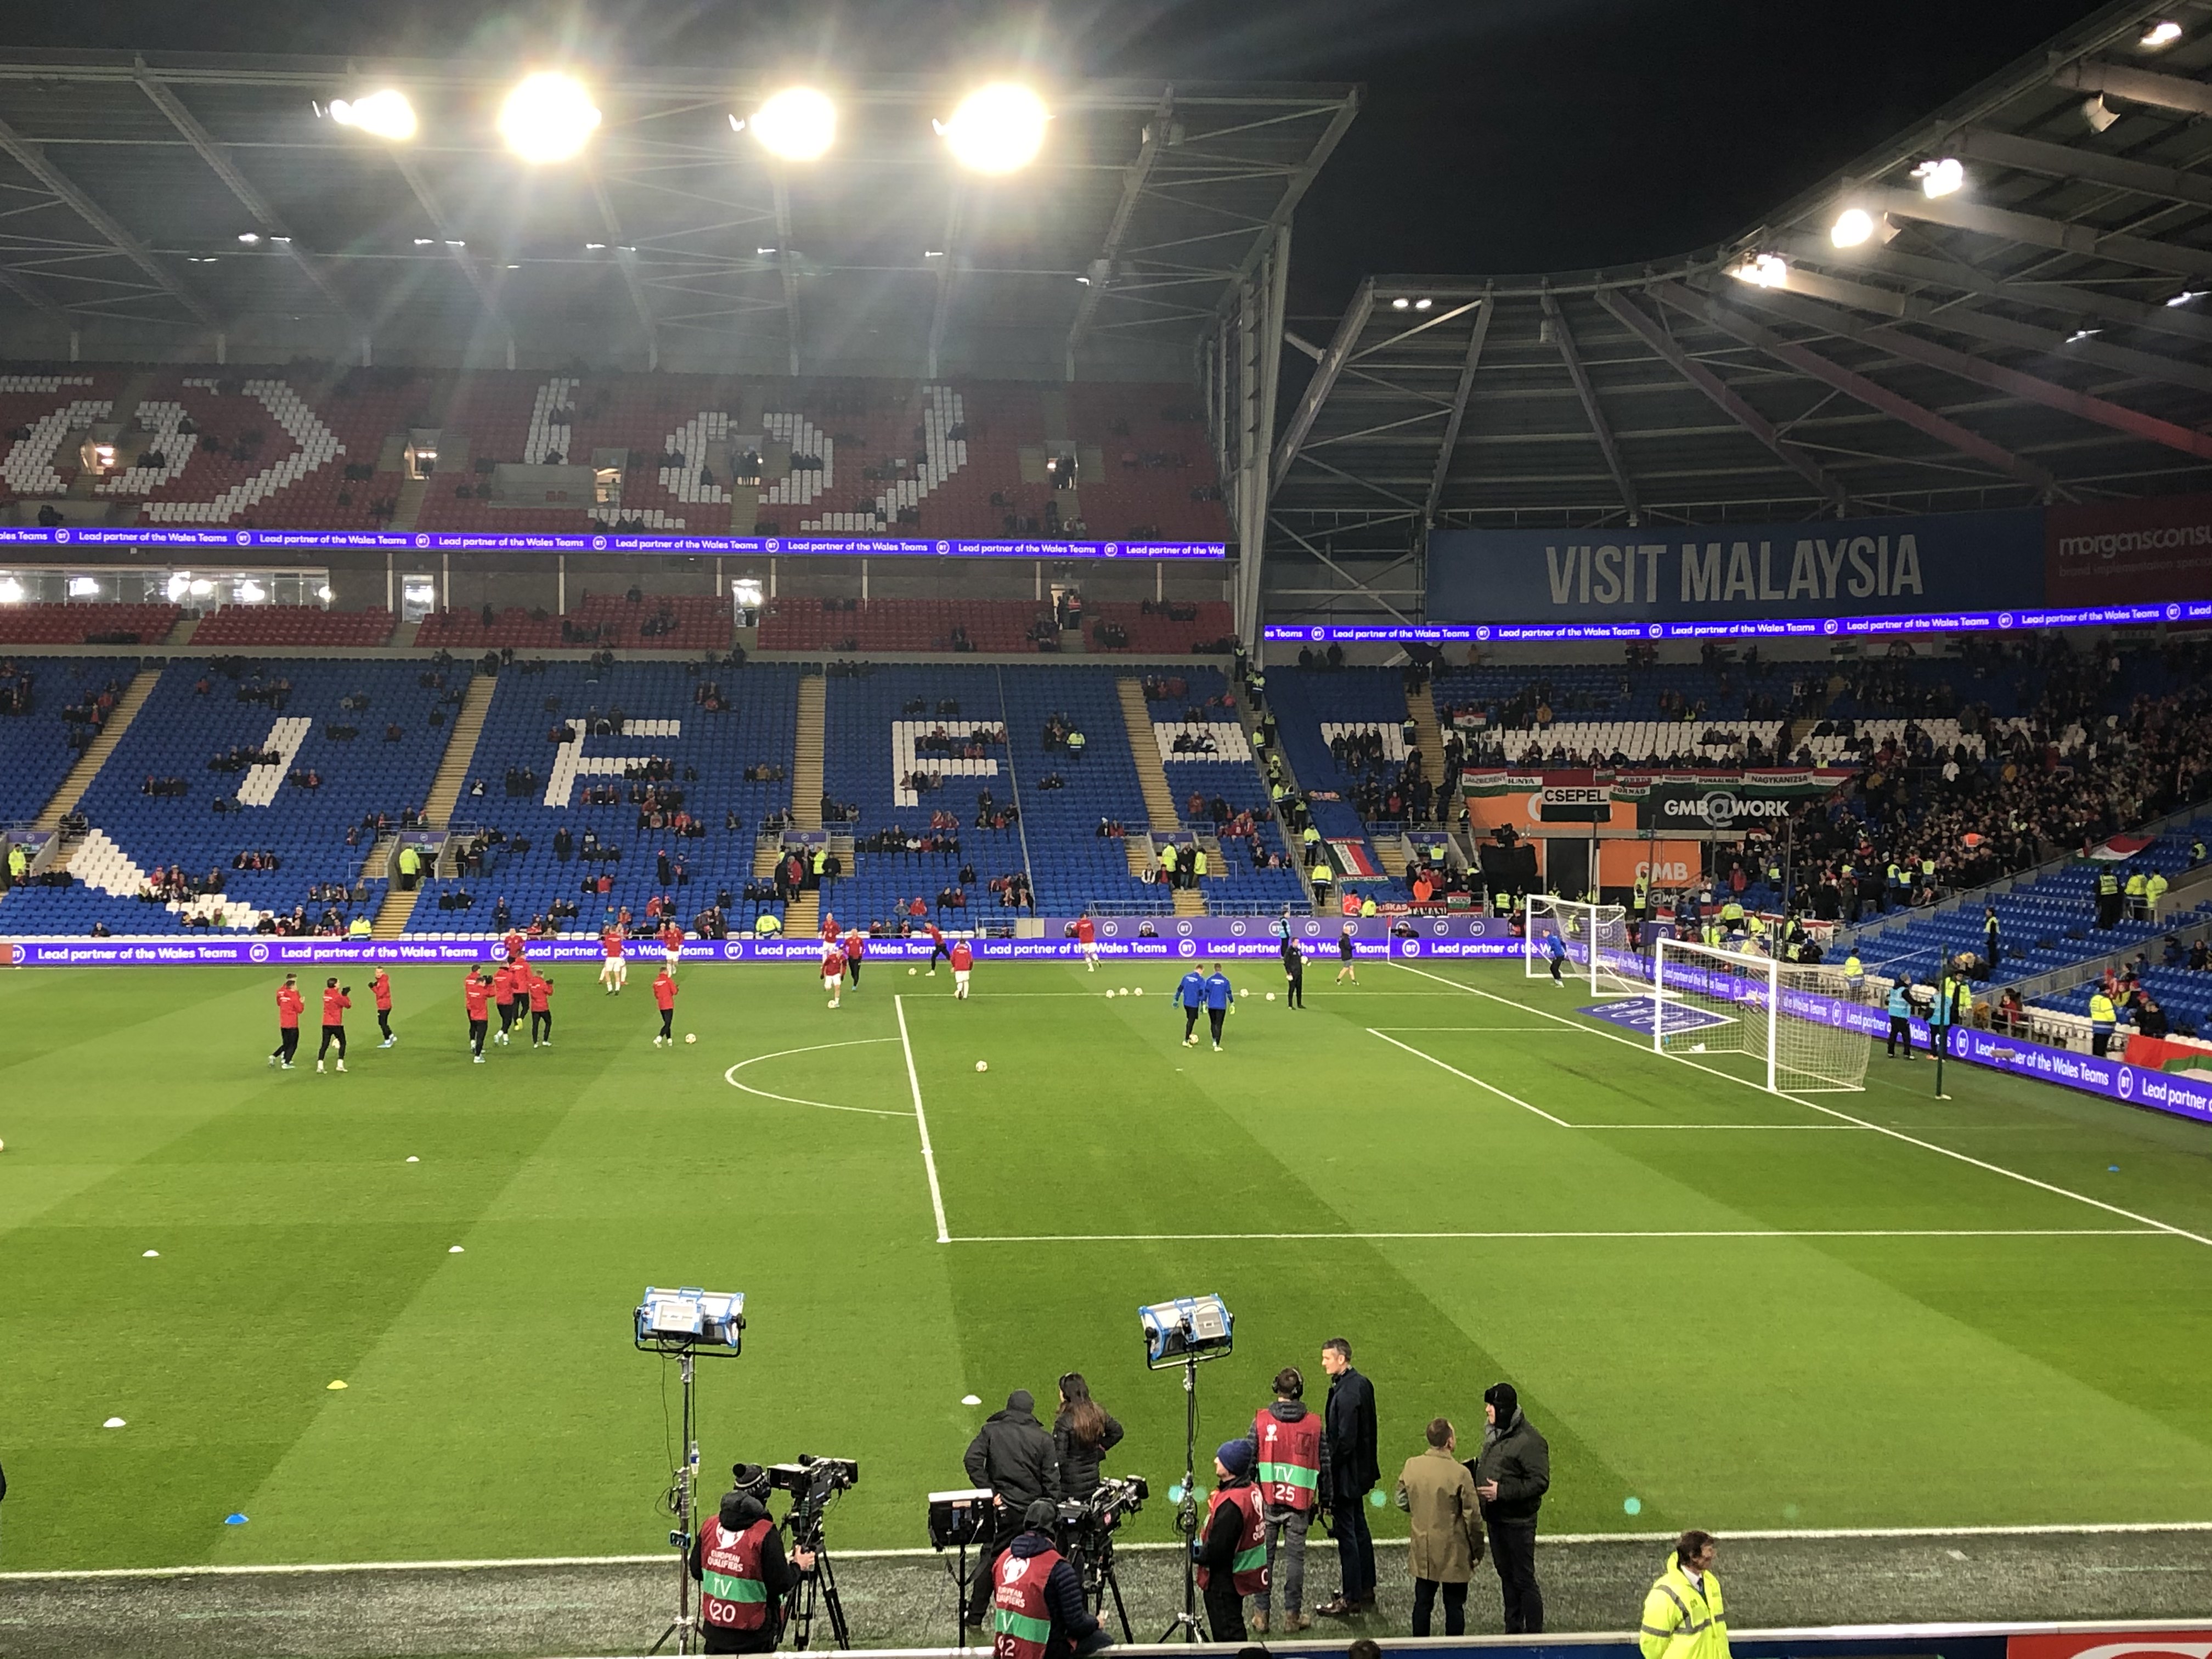 Ellepték a magyar szurkolók Cardiffot: ez történt a Magyarország-Wales  mérkőzés előtt - Blikk